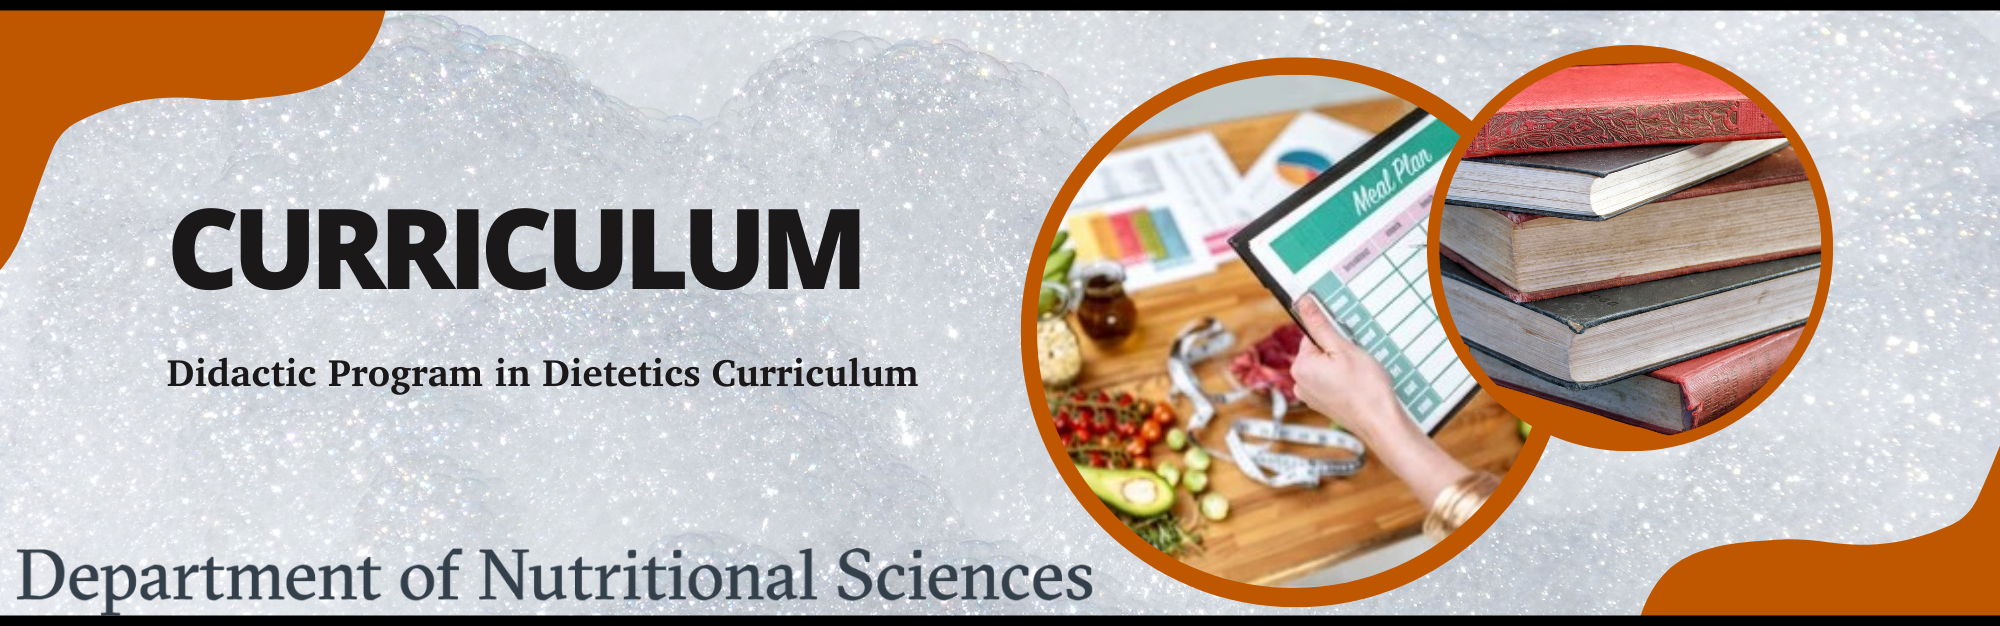 Dietetic Curriculum Showcase Image